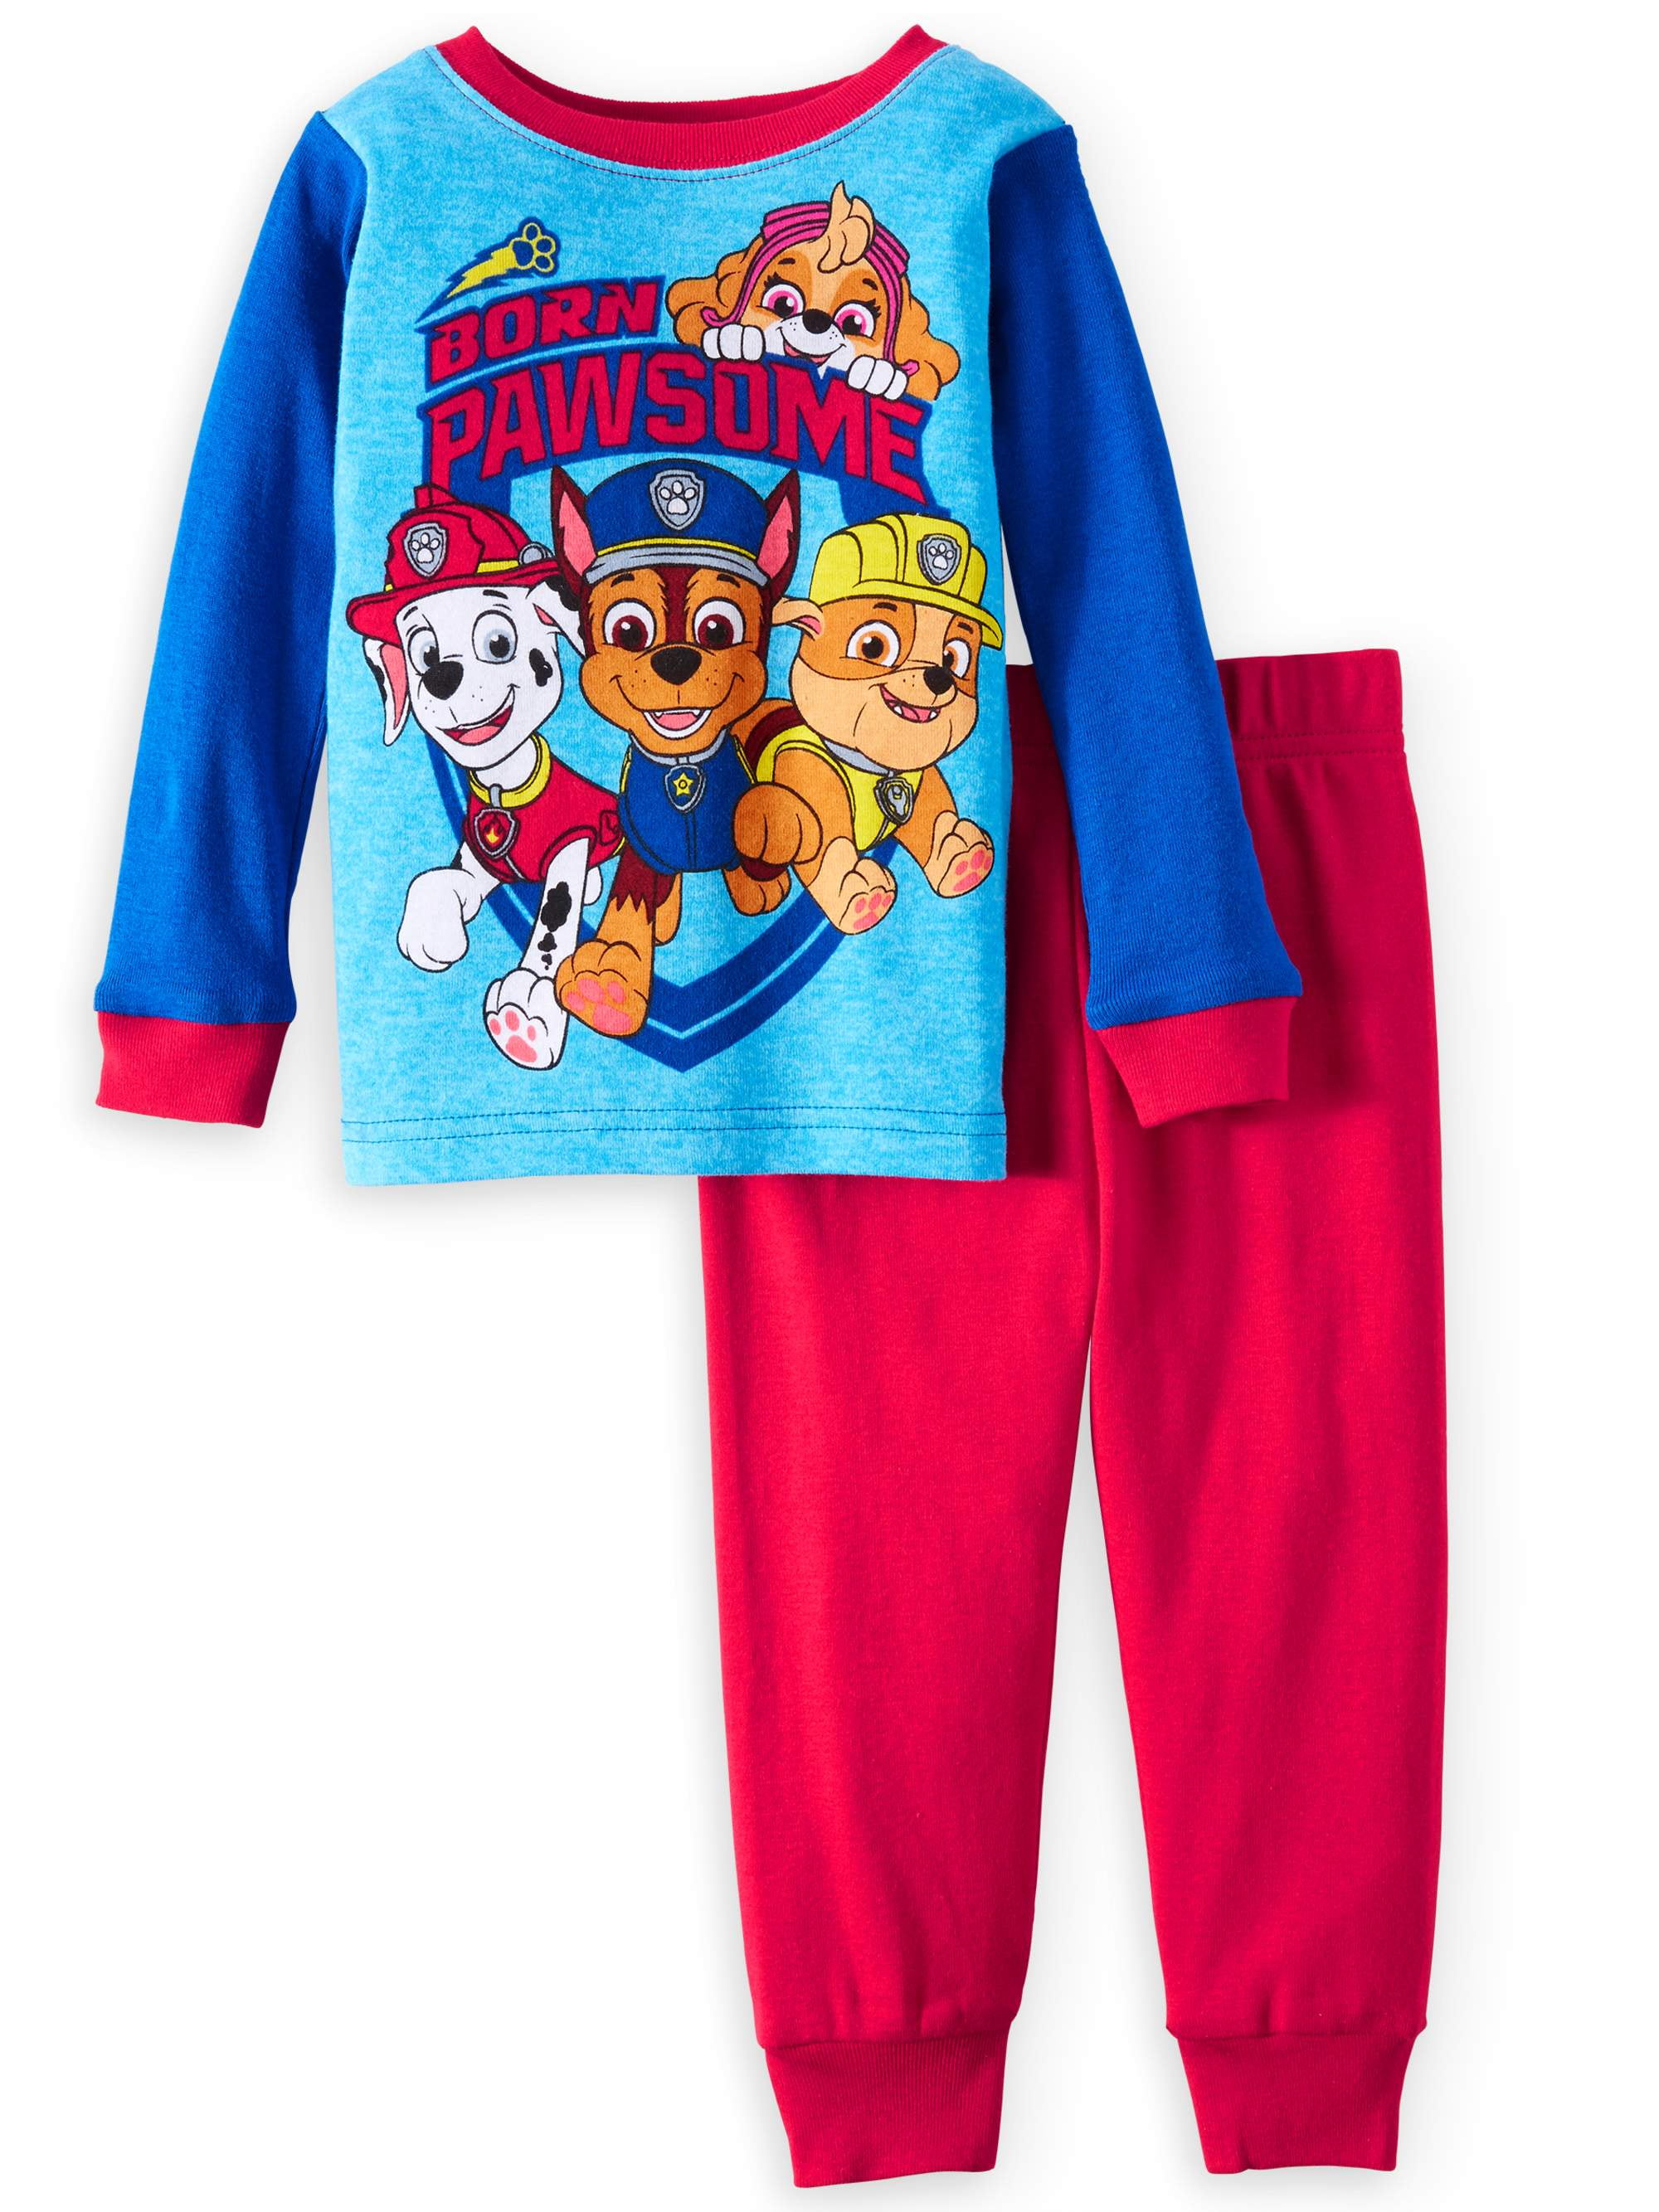 Paw Patrol Pajamas, 2pc Set (Toddler – BrickSeek